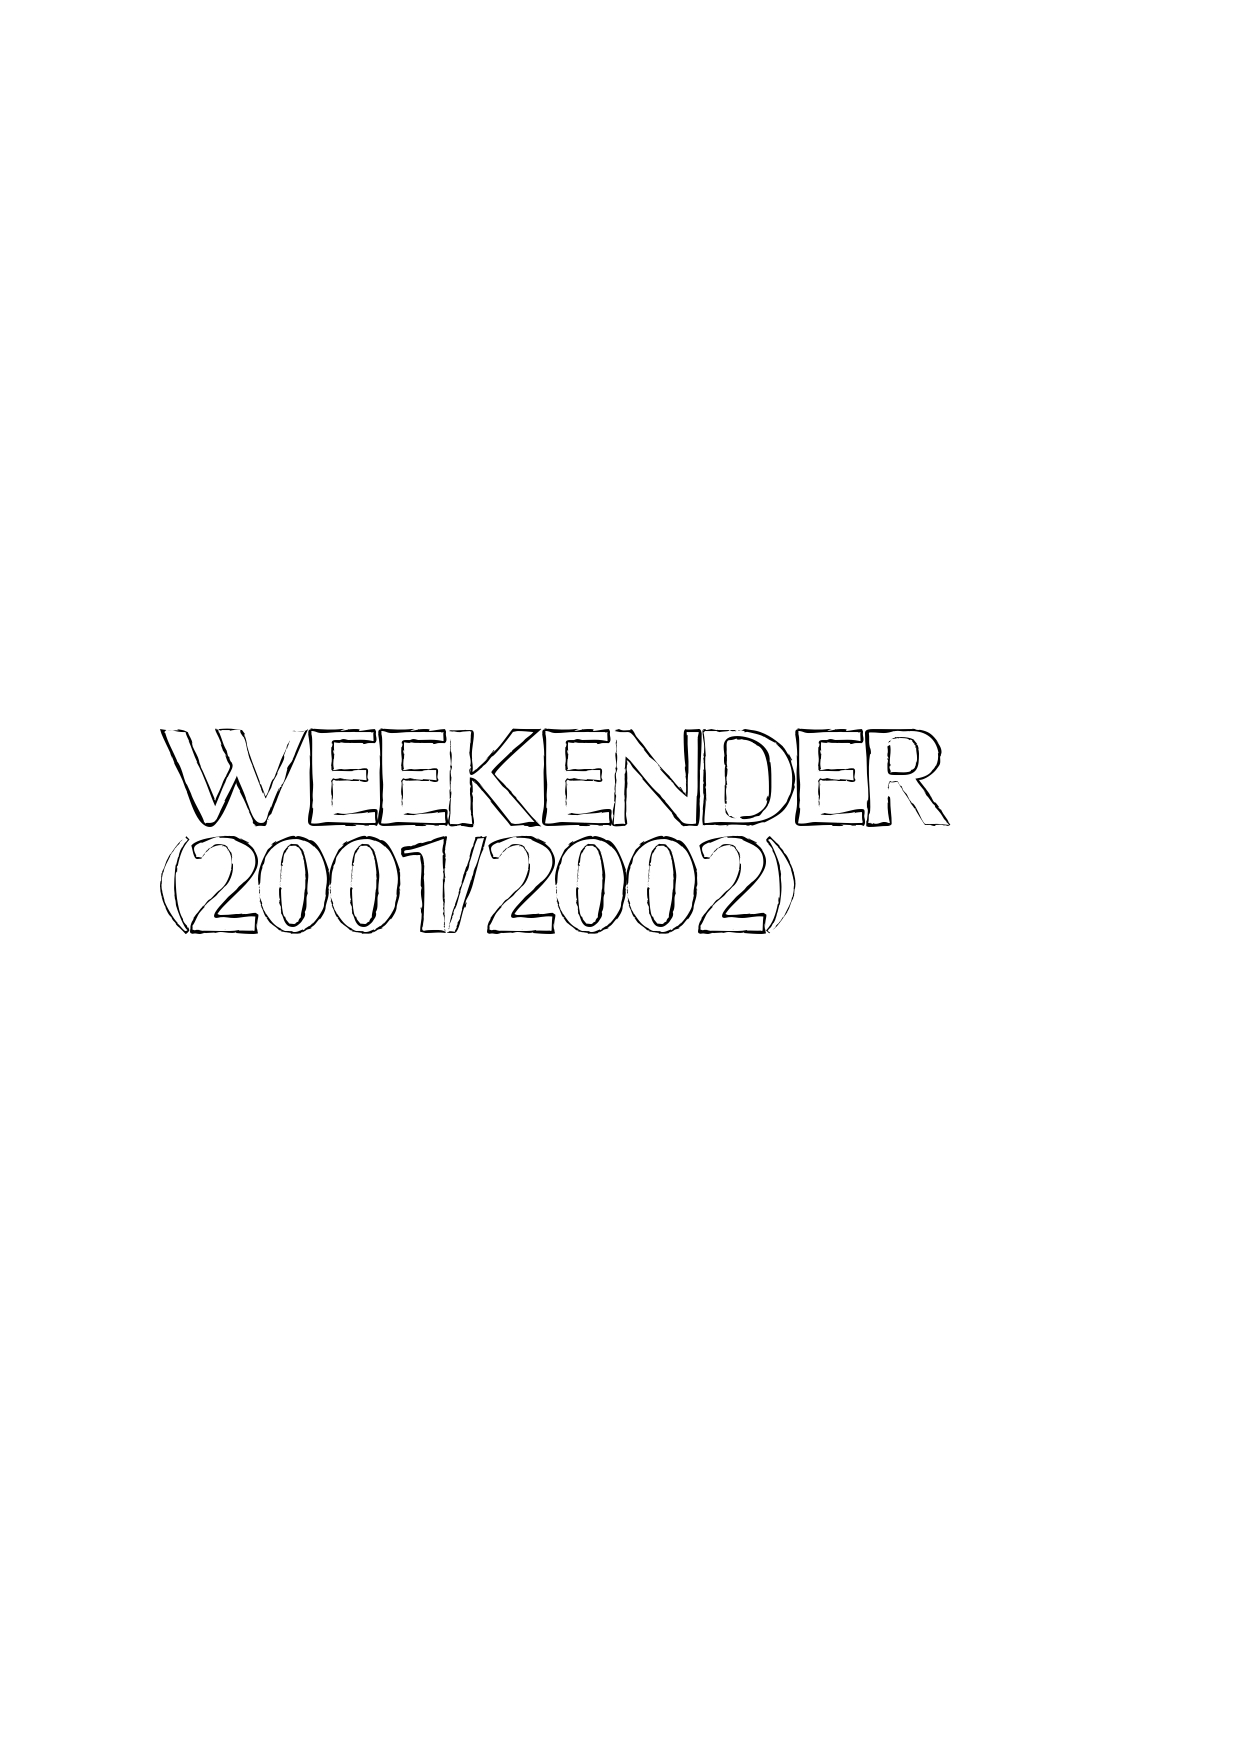 Weekender(2001/2002)